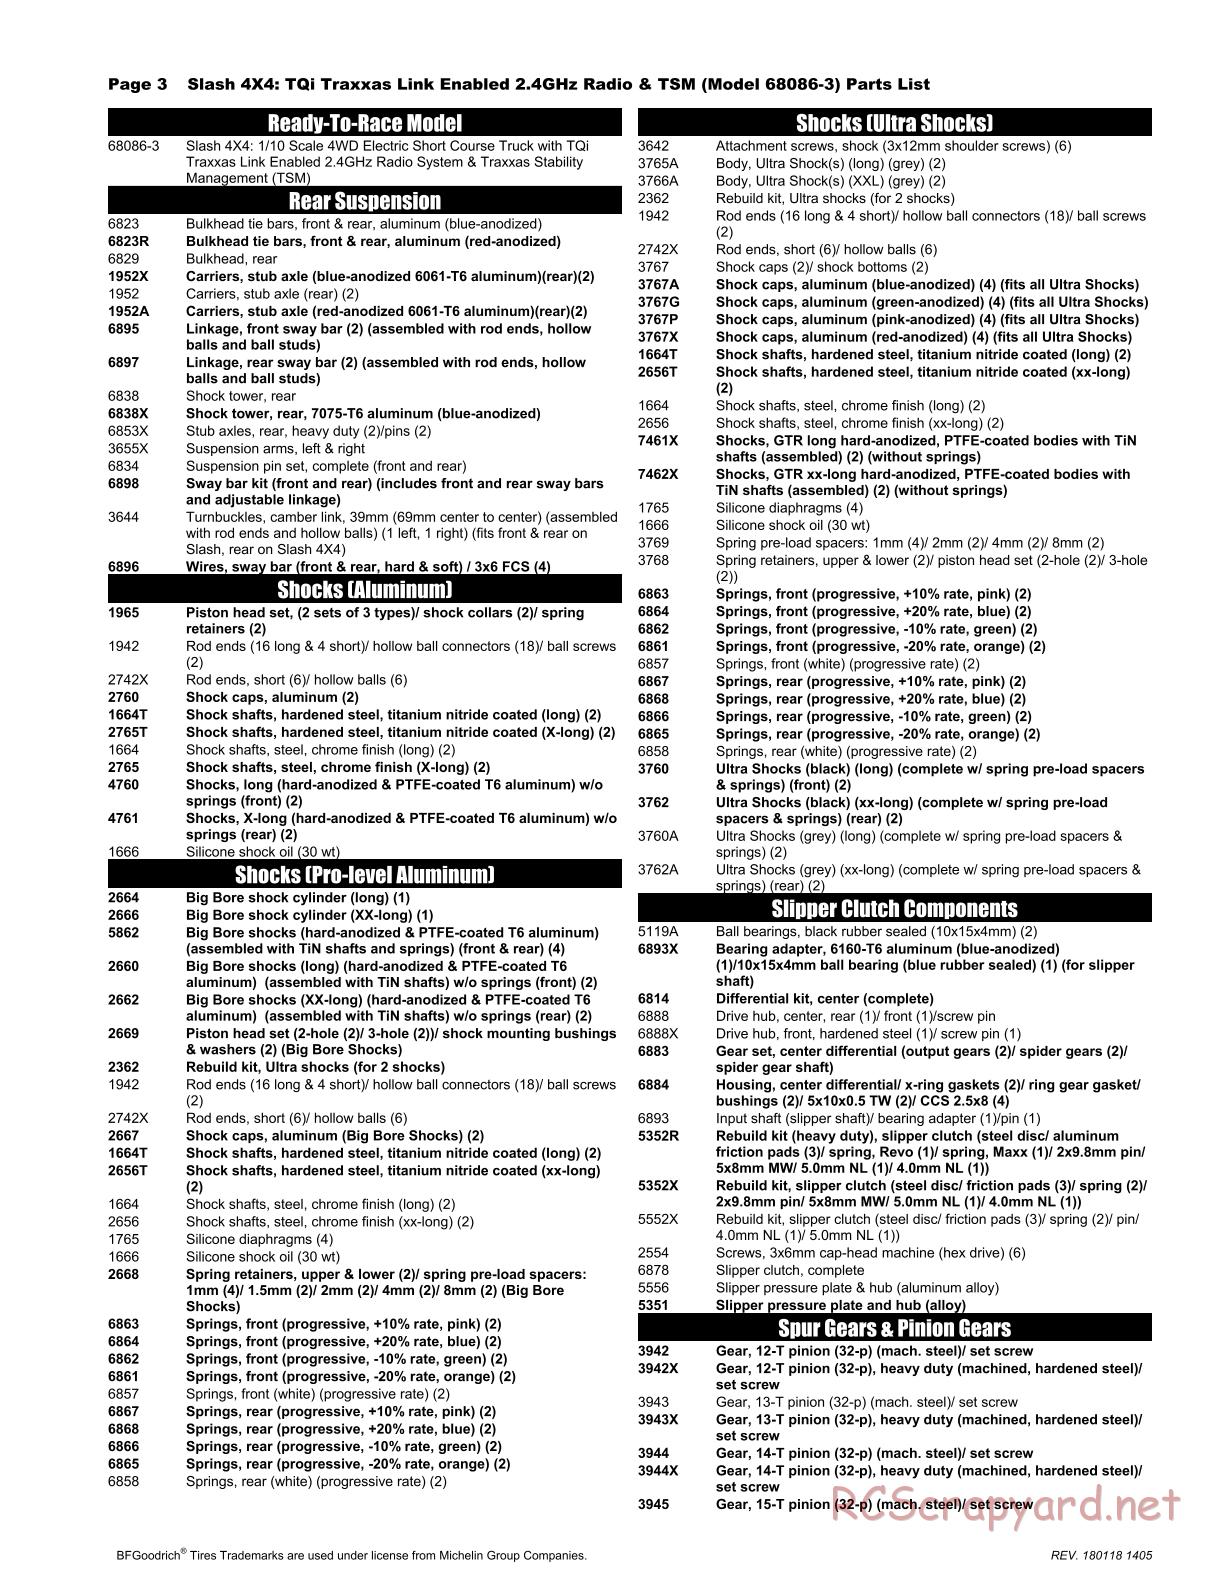 Traxxas - Slash 4x4 TSM (2015) - Parts List - Page 3